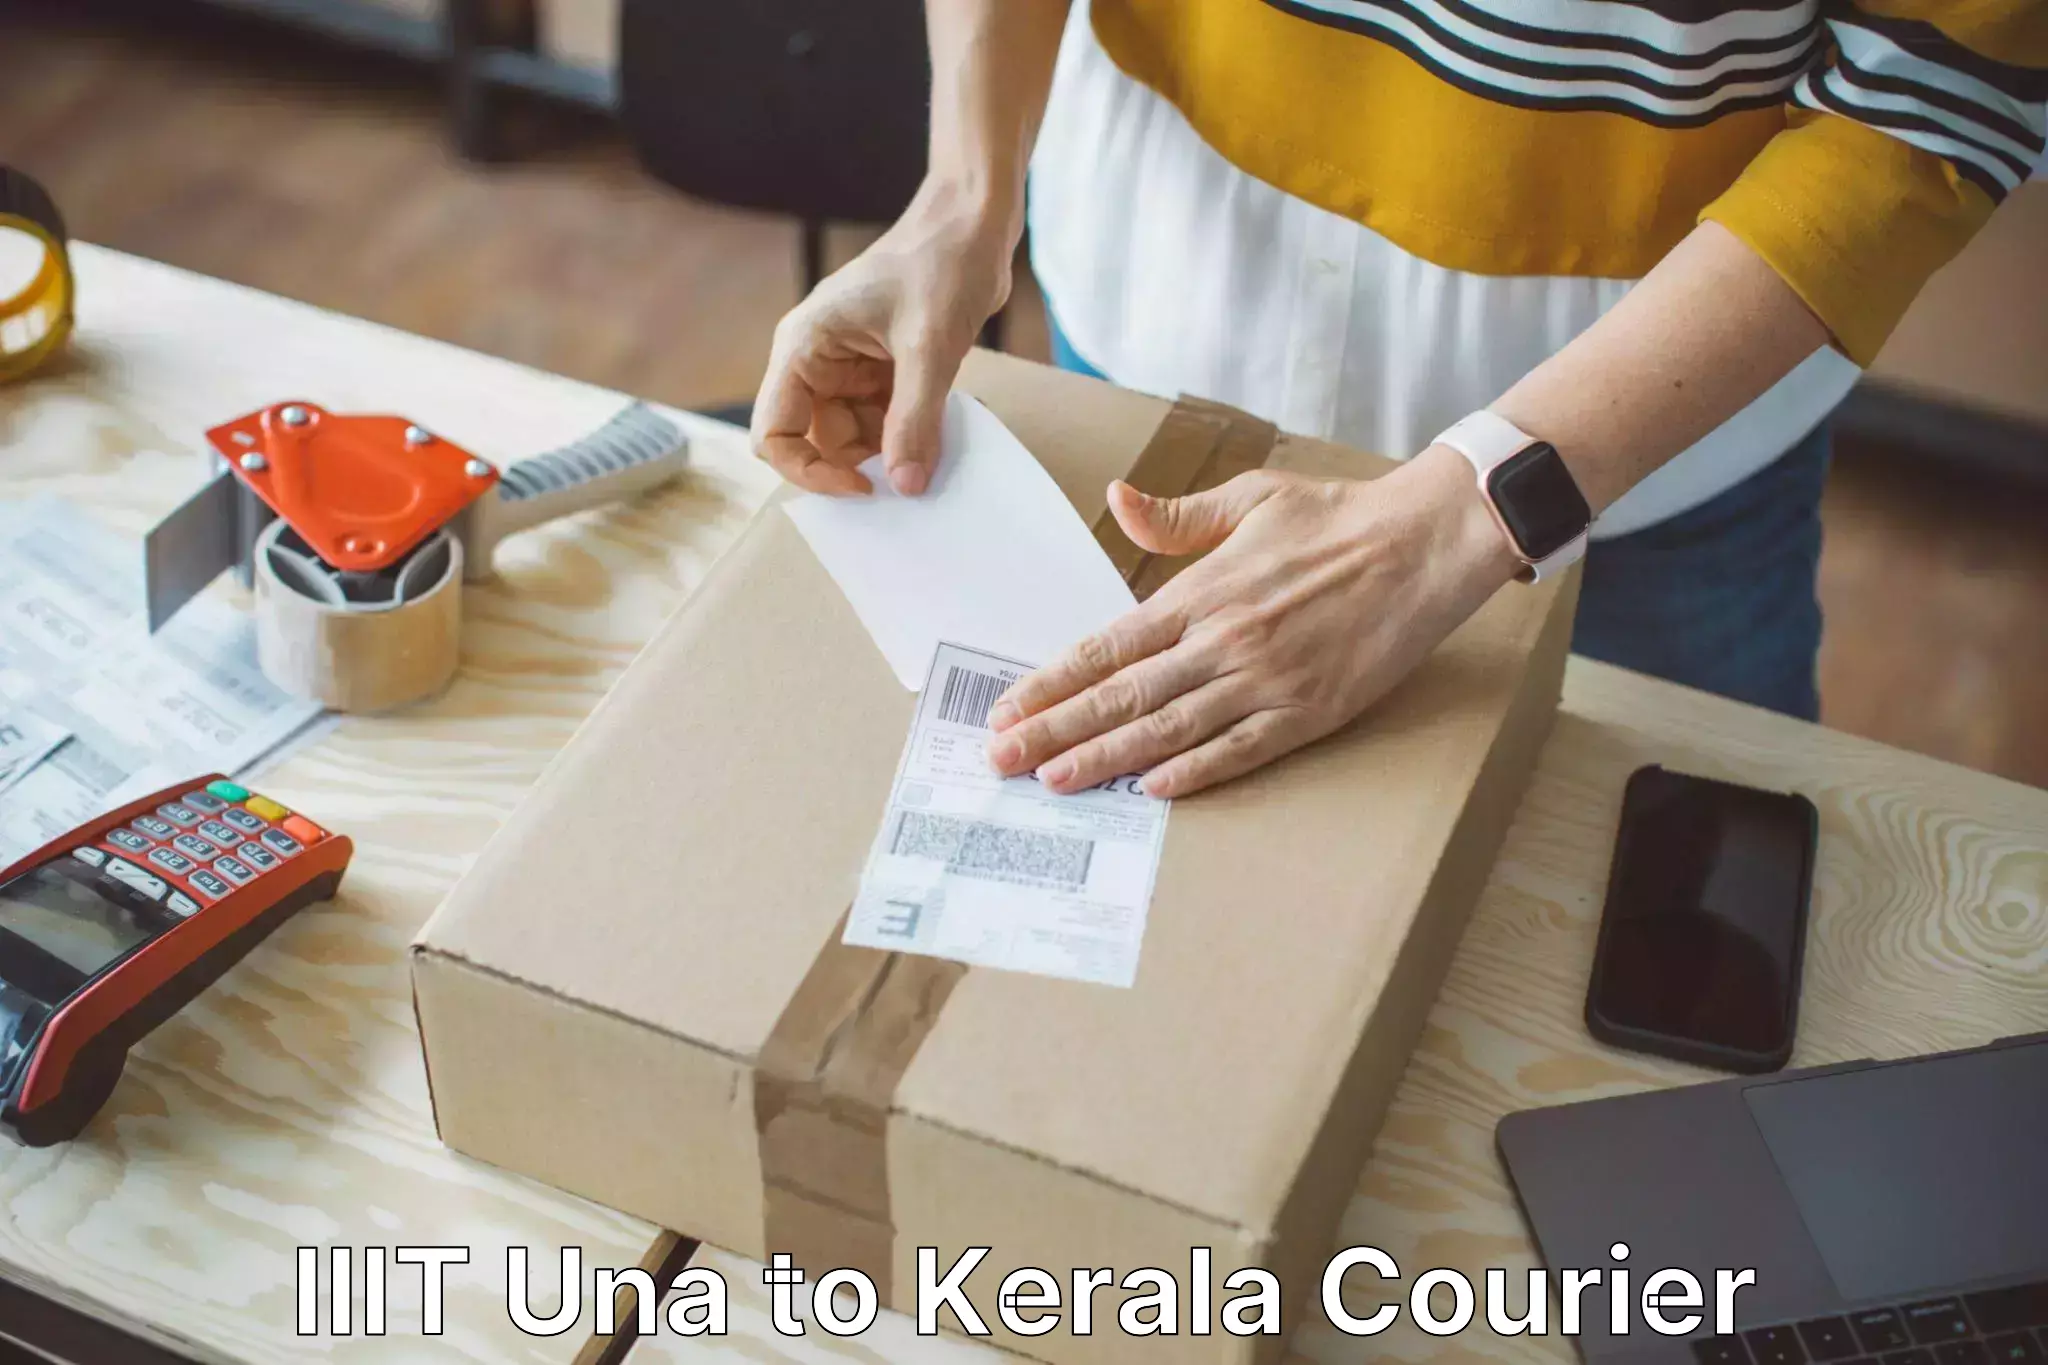 Customized luggage delivery IIIT Una to Kerala